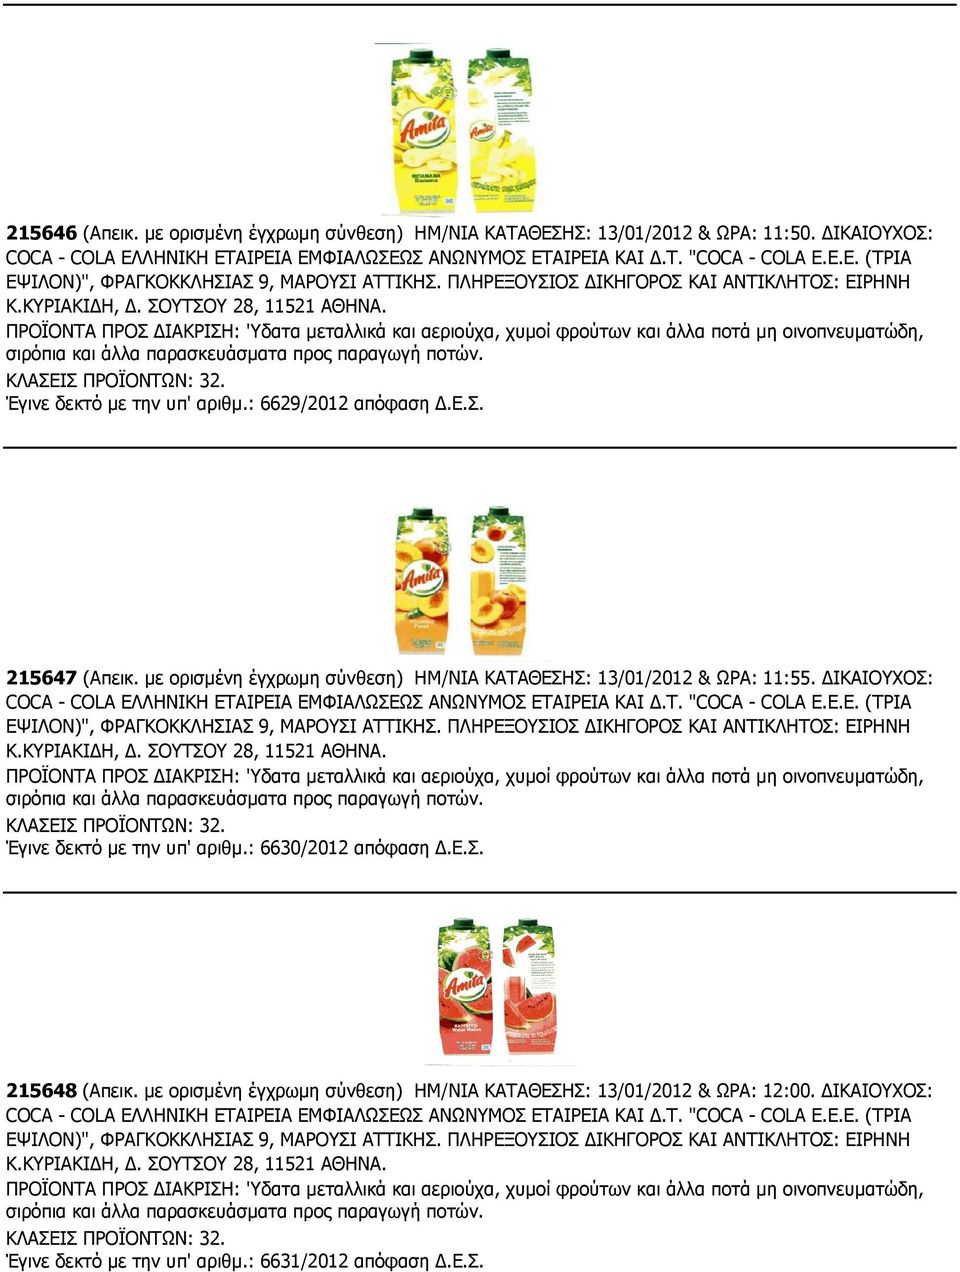 ΠΡΟΪΟΝΤΑ ΠΡΟΣ ΙΑΚΡΙΣΗ: 'Υδατα µεταλλικά και αεριούχα, χυµοί φρούτων και άλλα ποτά µη οινοπνευµατώδη, σιρόπια και άλλα παρασκευάσµατα προς παραγωγή ποτών. ΚΛΑΣΕΙΣ ΠΡΟΪΟΝΤΩΝ: 32.